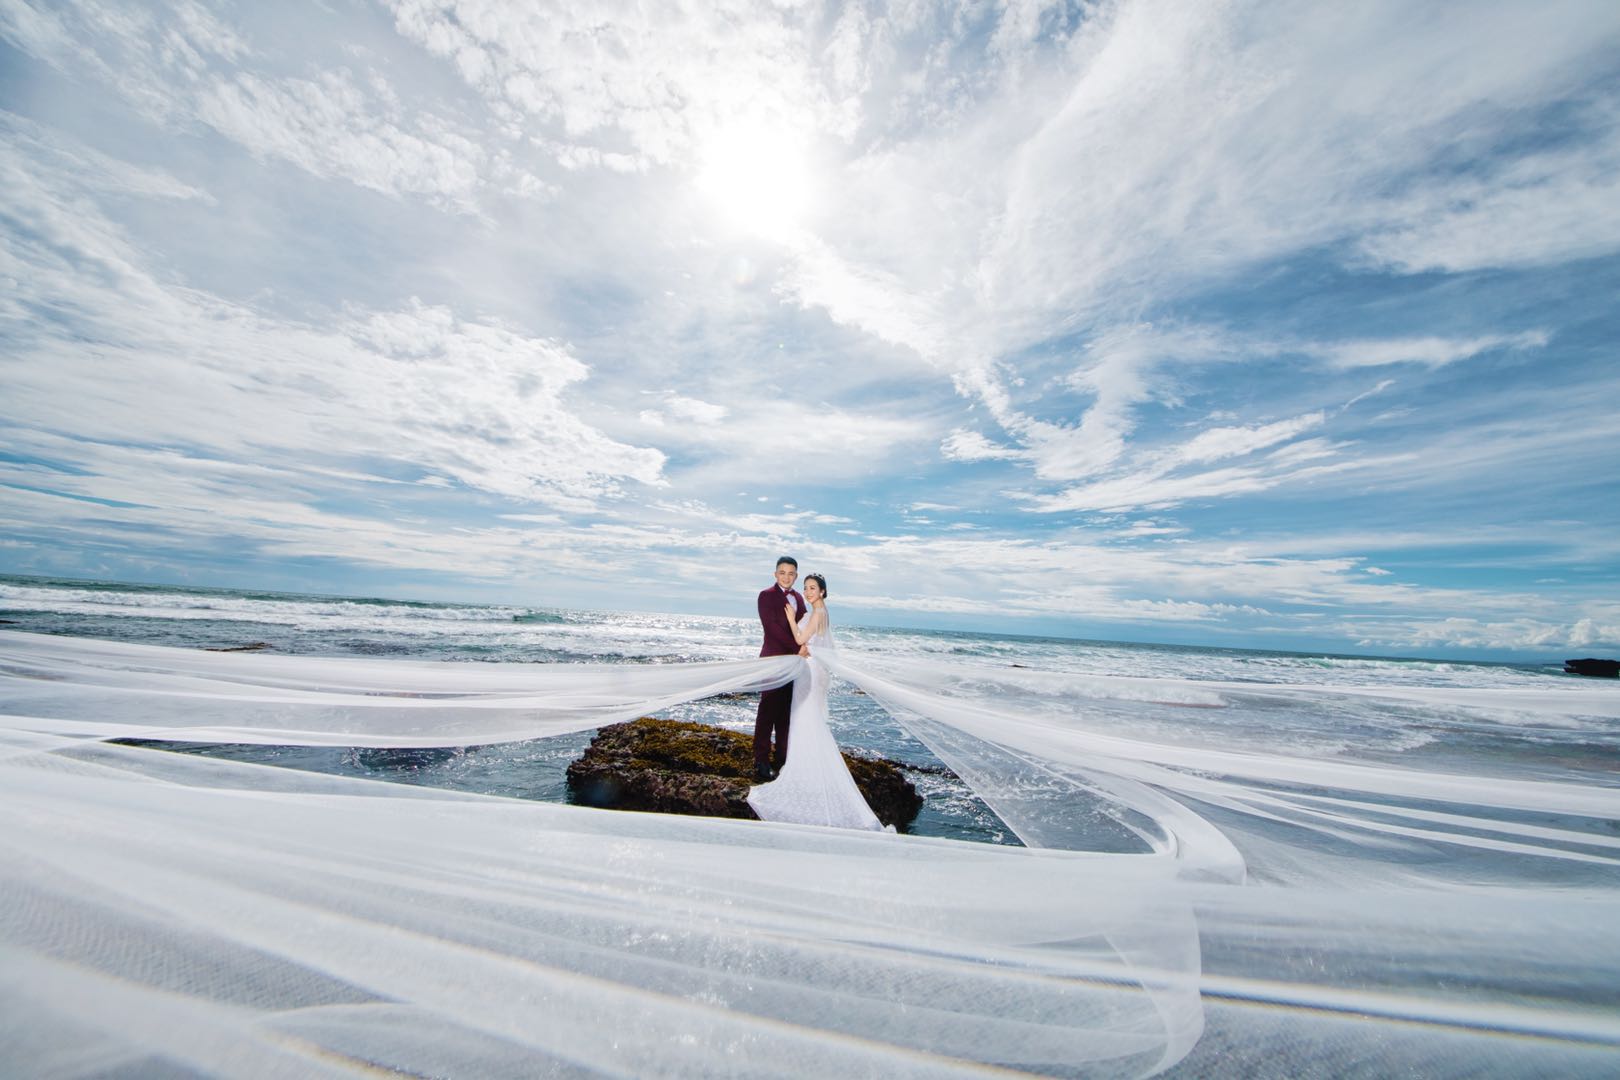 【jujiao】大气质感旅拍婚纱照 | 客片分享